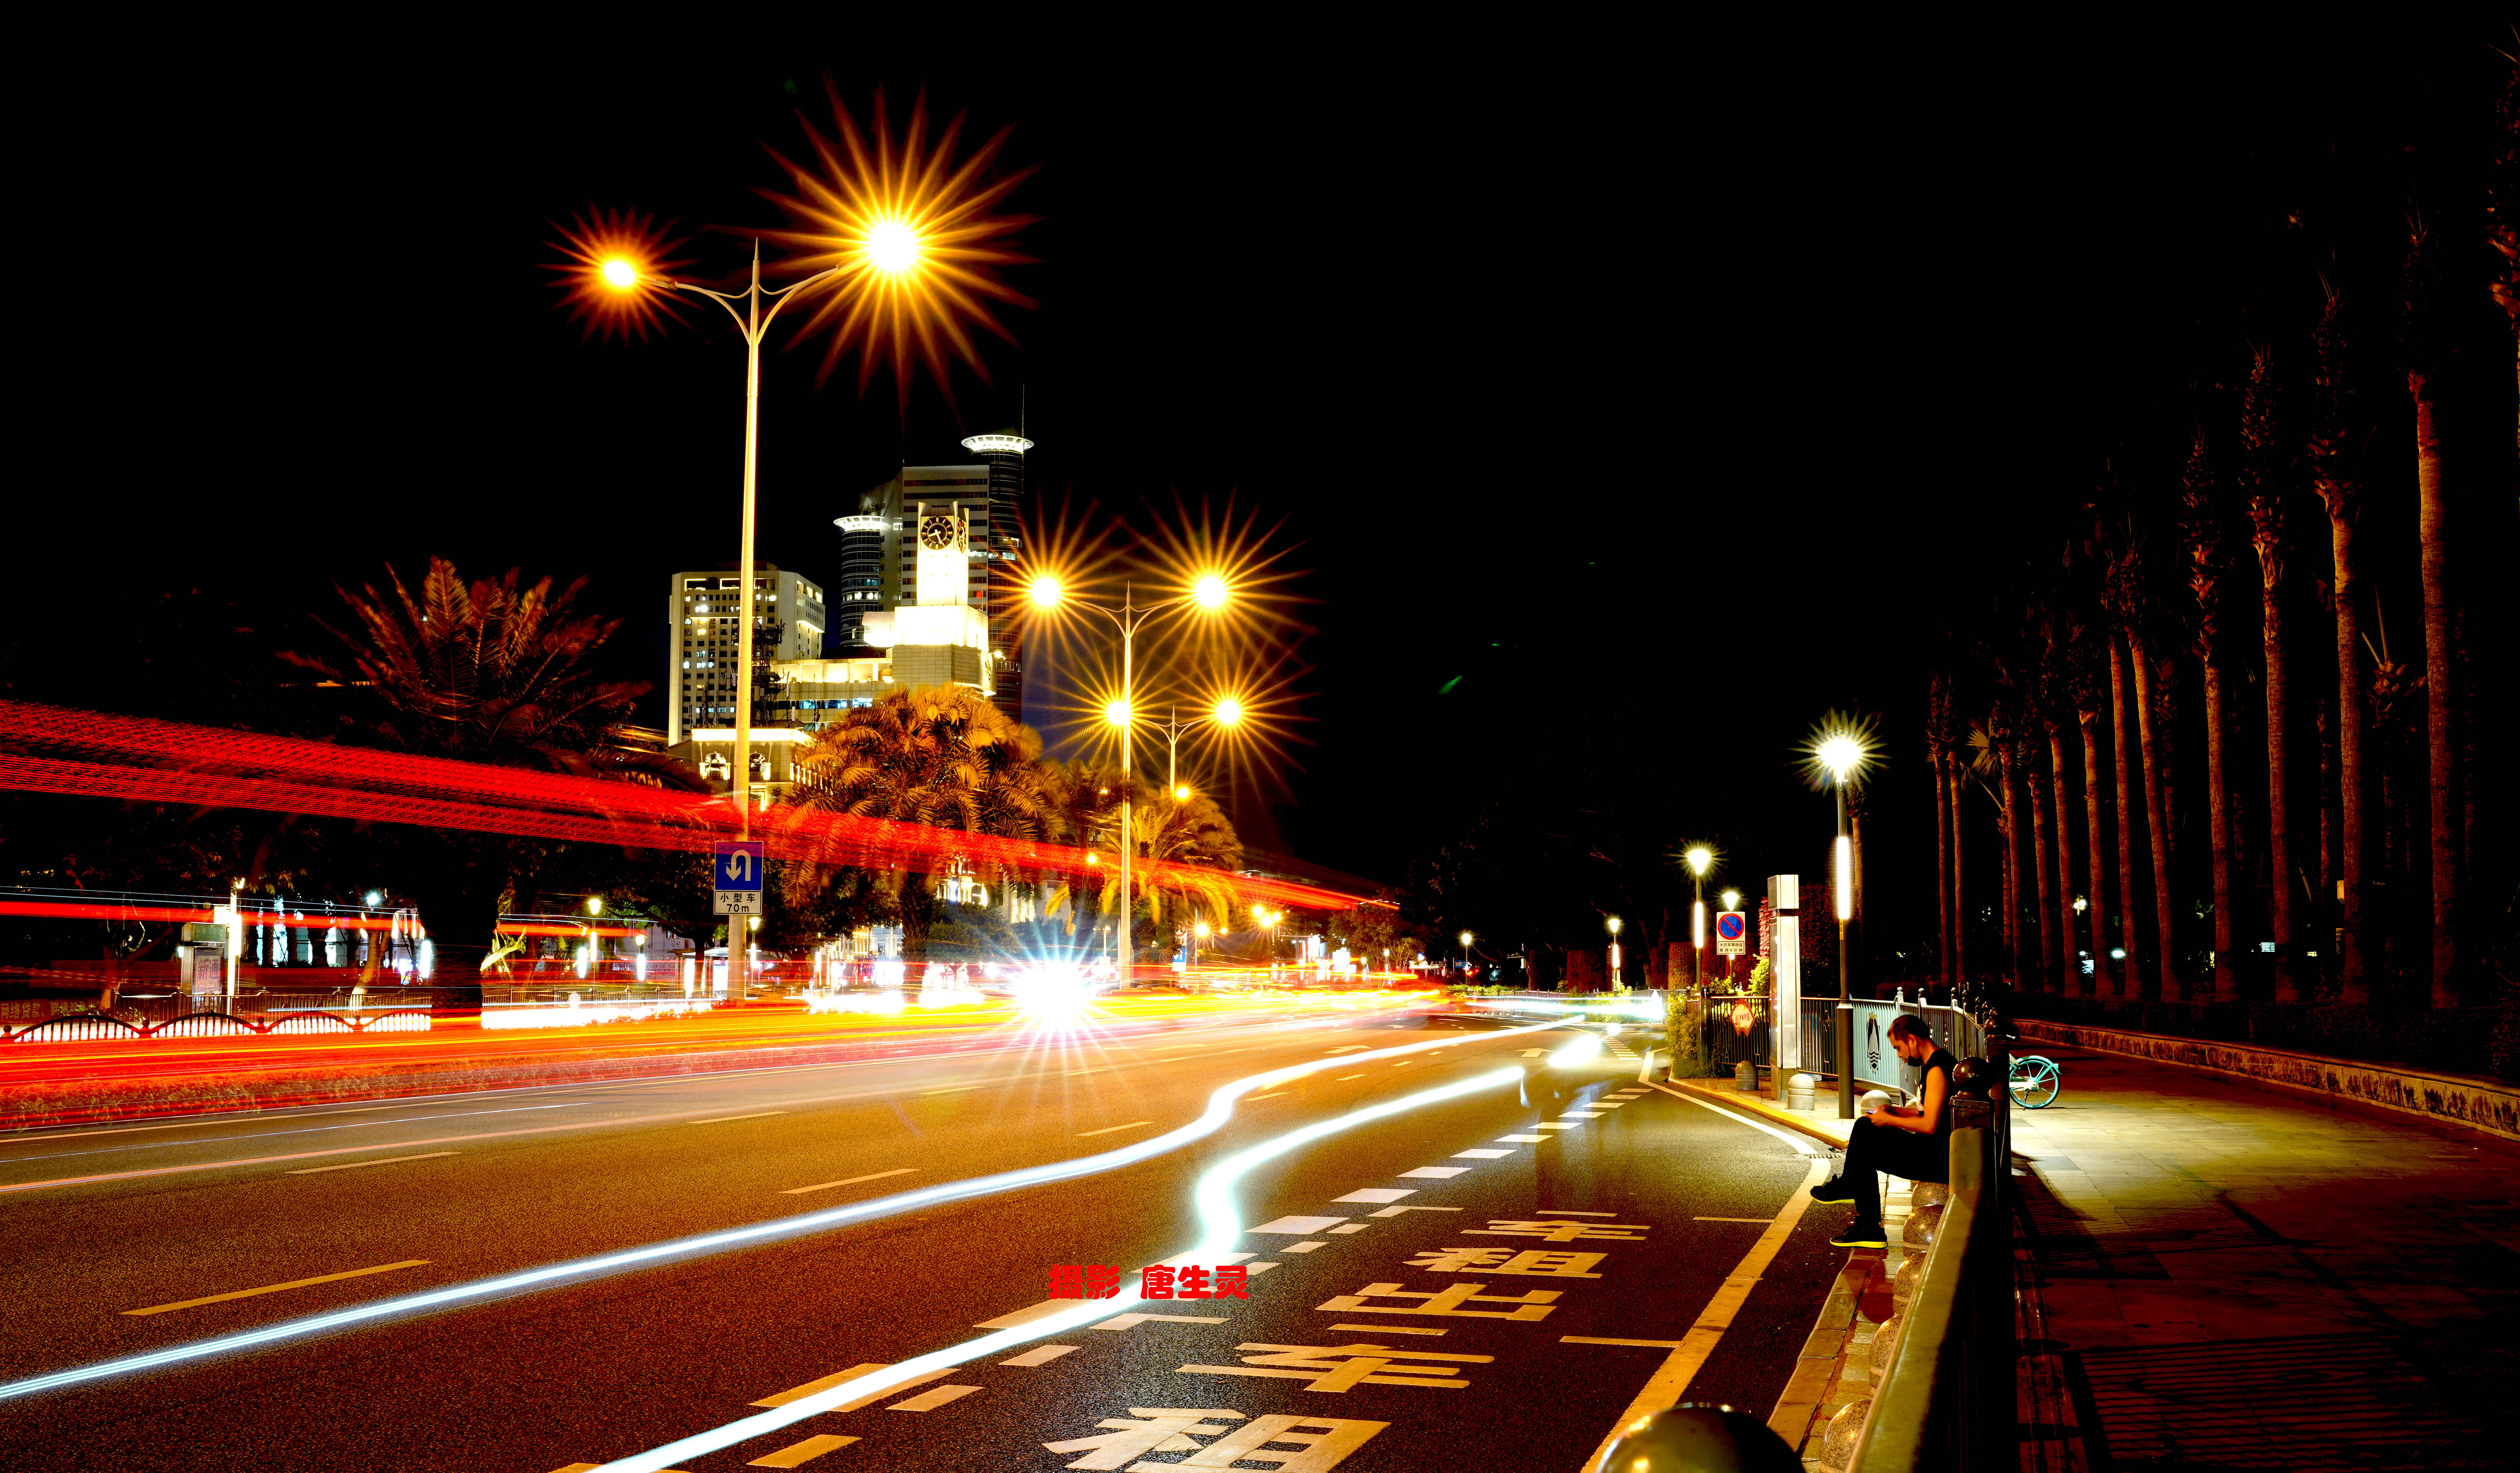 马路照片 夜景图片